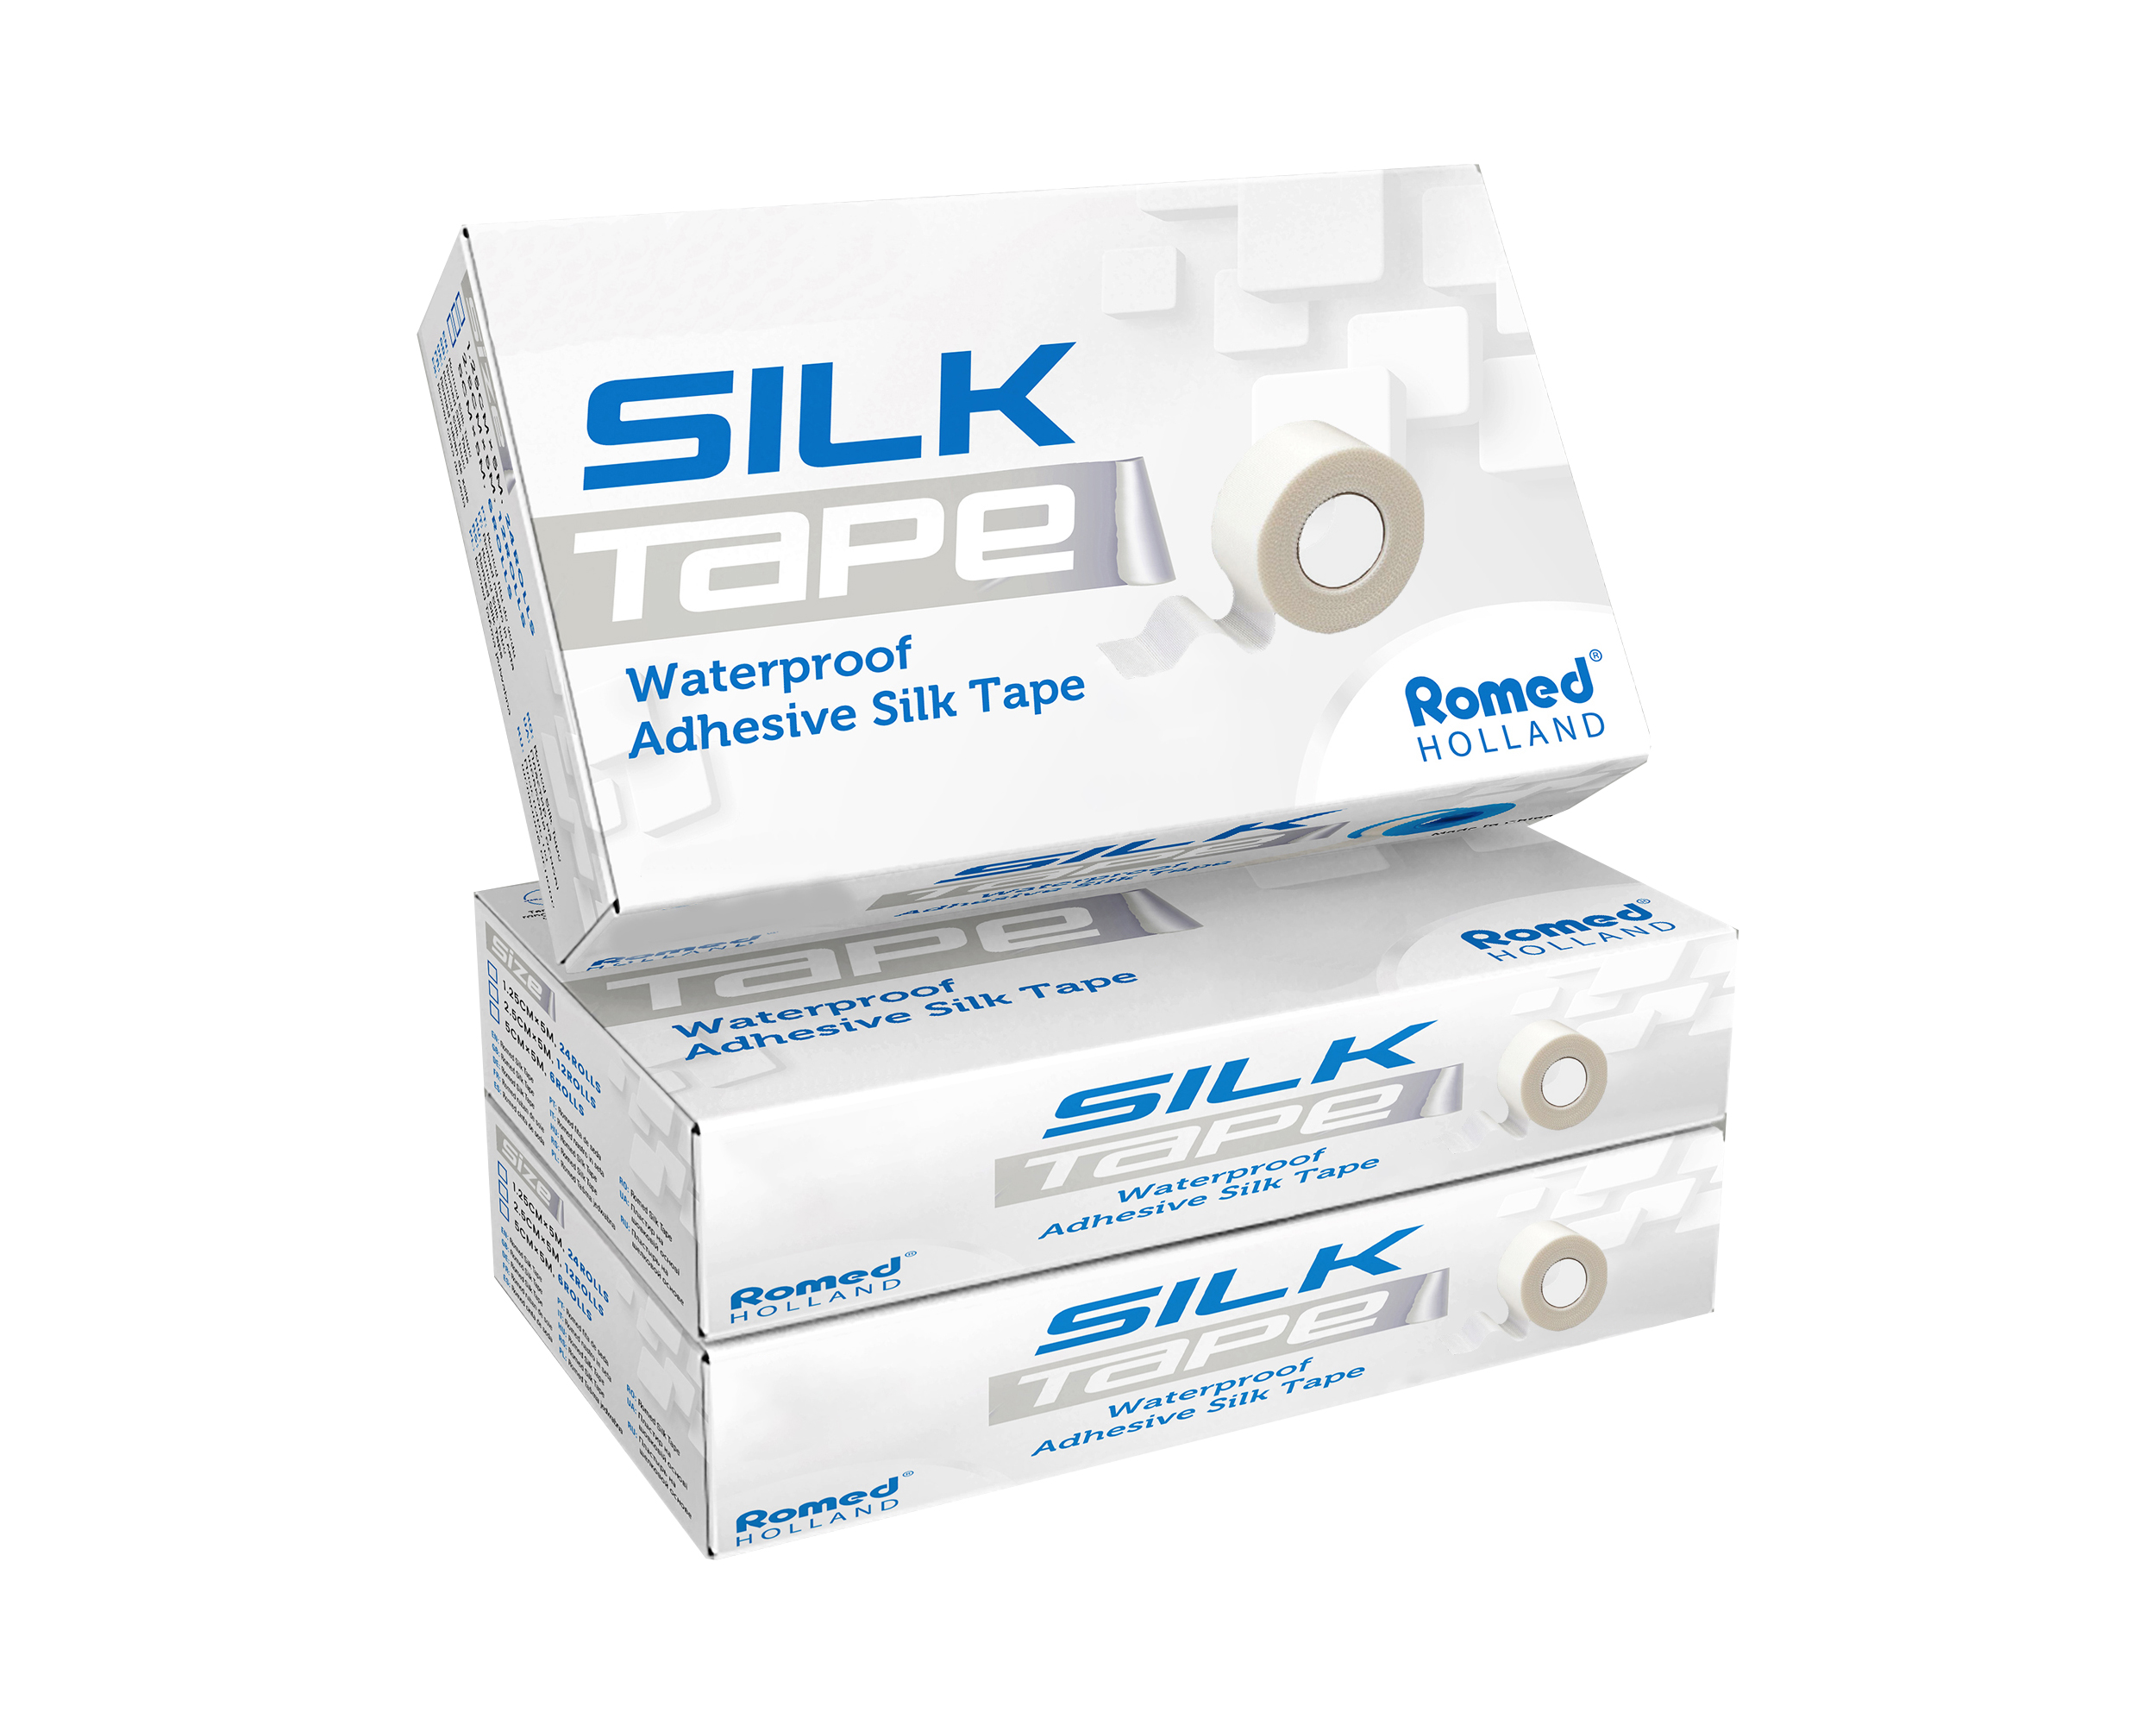 ST-1.25 Romed Adhesive Silk Tape, 1.25 cm x 5 m, leicht zu reißen, wasserfest, 24 Rollen im Innenkarton, 720 Rollen pro Karton.